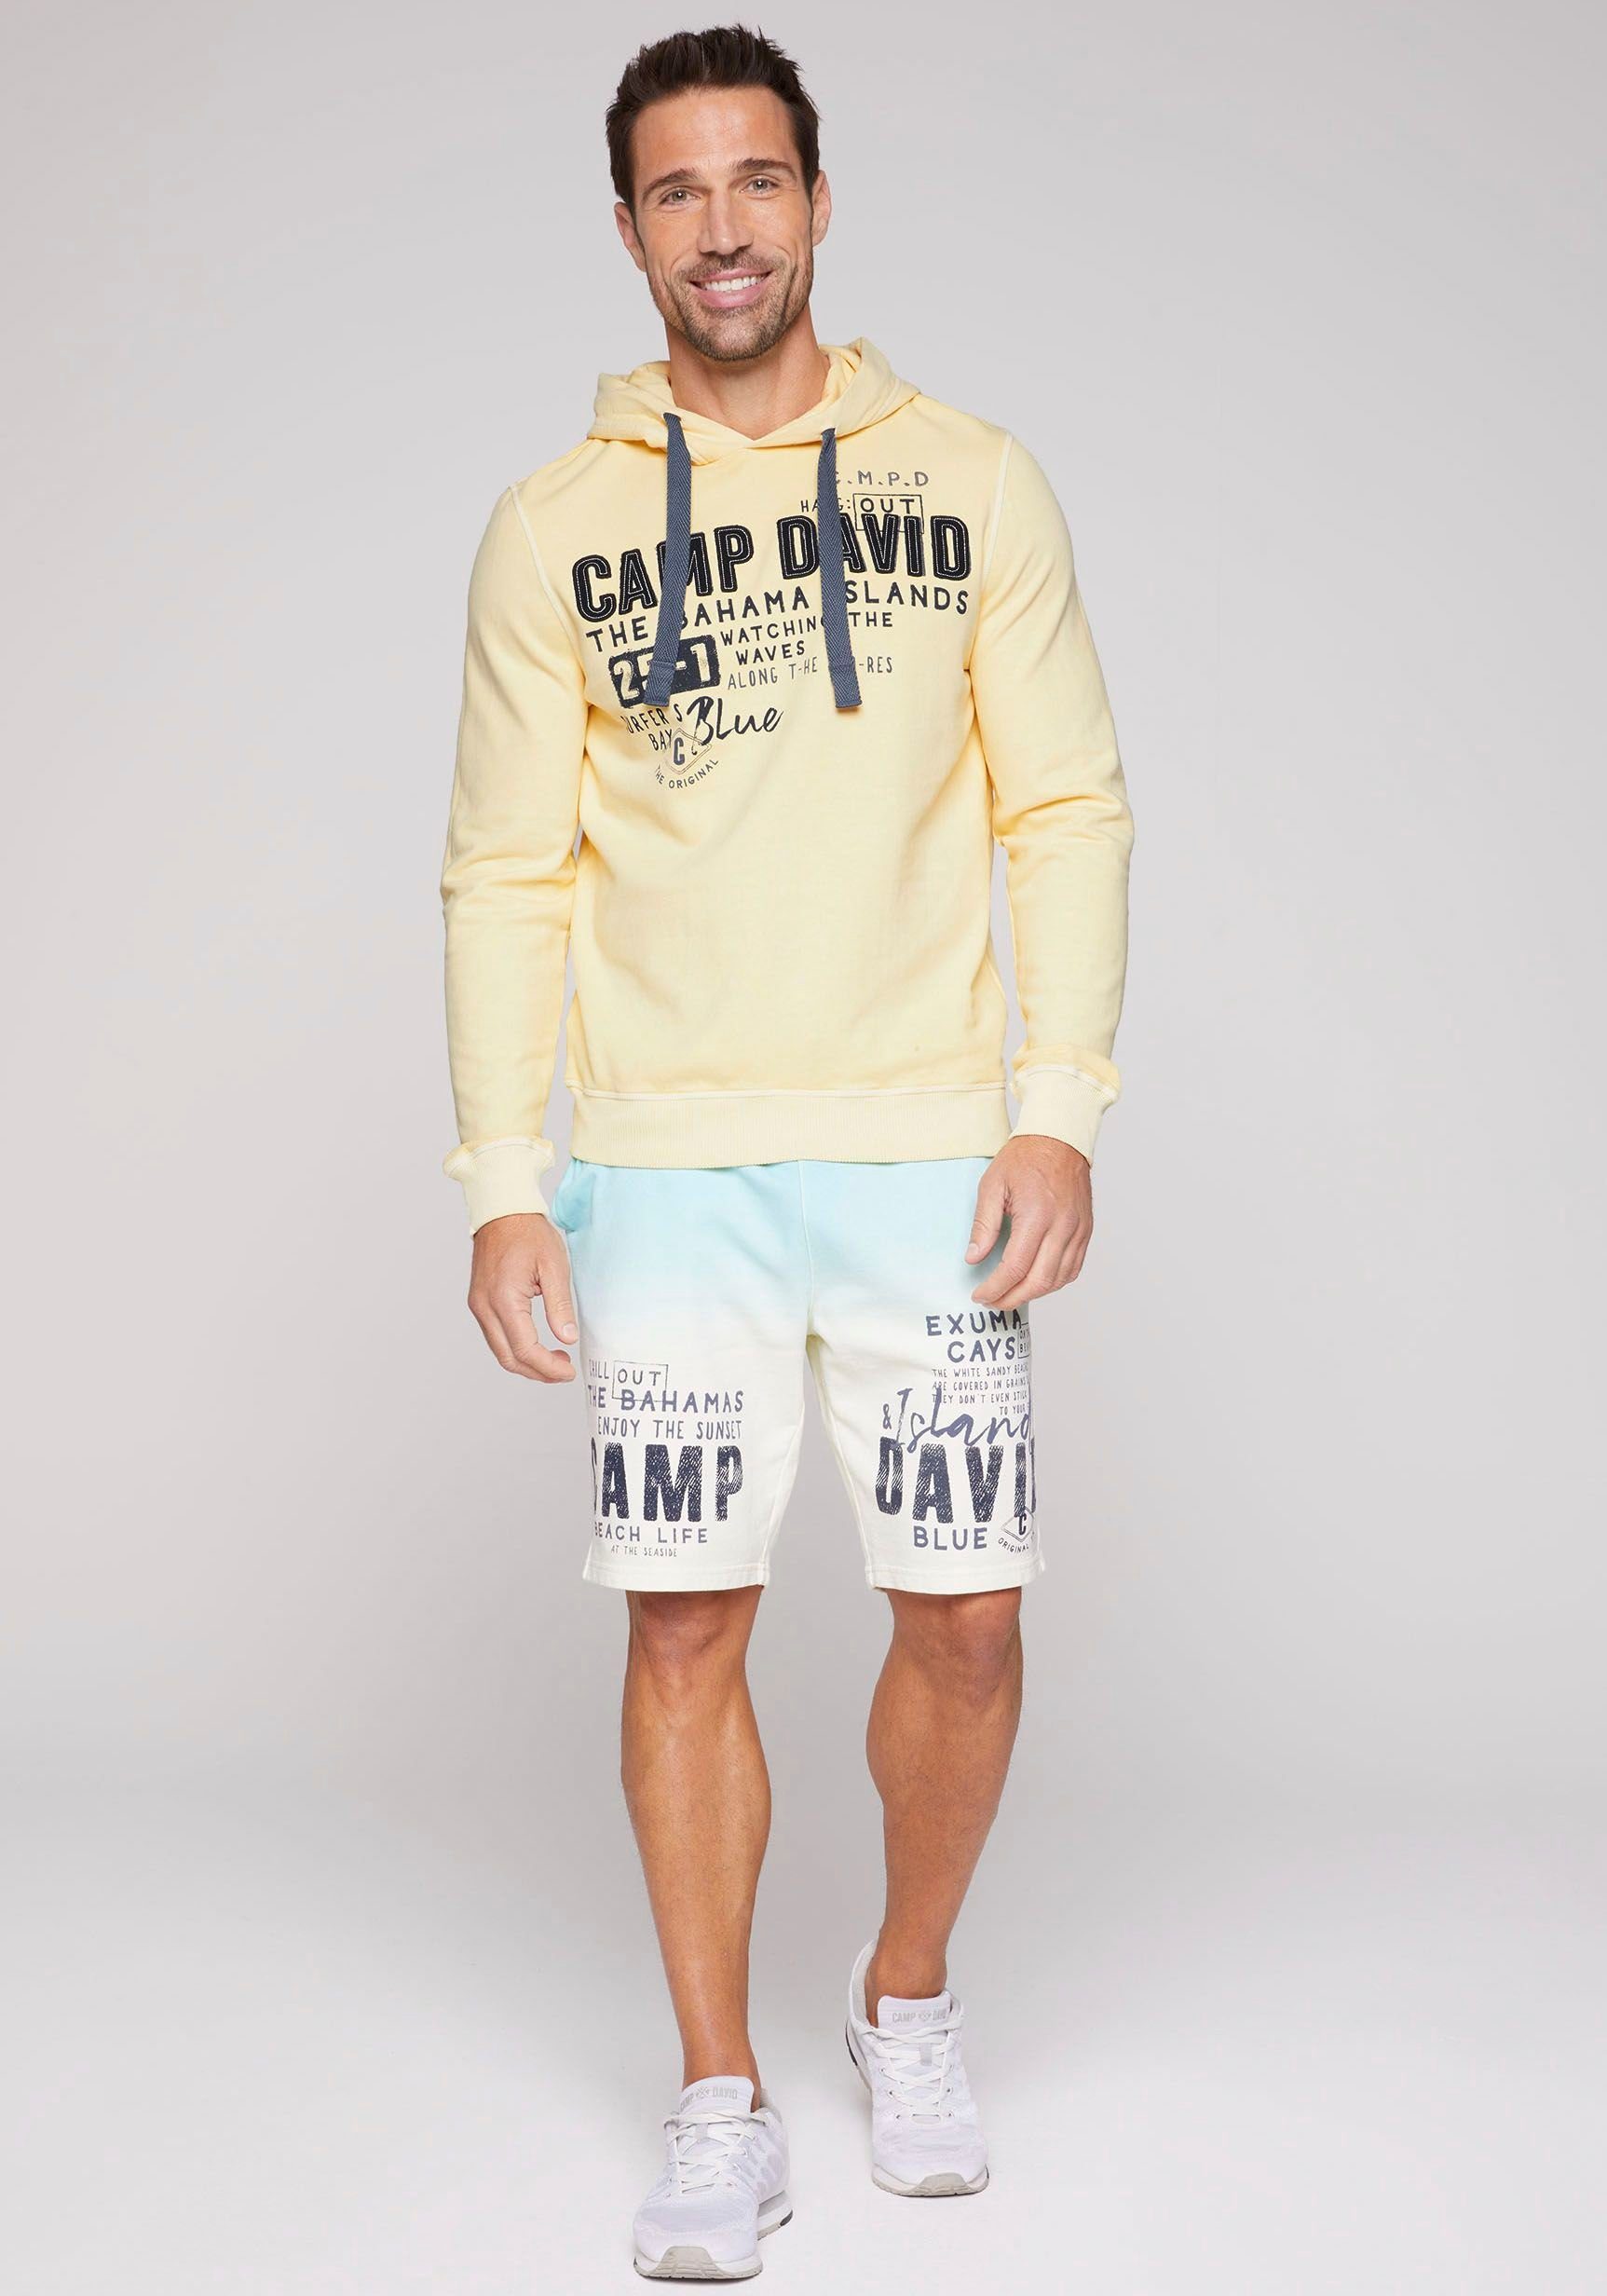 DAVID banana sun mit CAMP Kapuzensweatshirt Schriftzügen